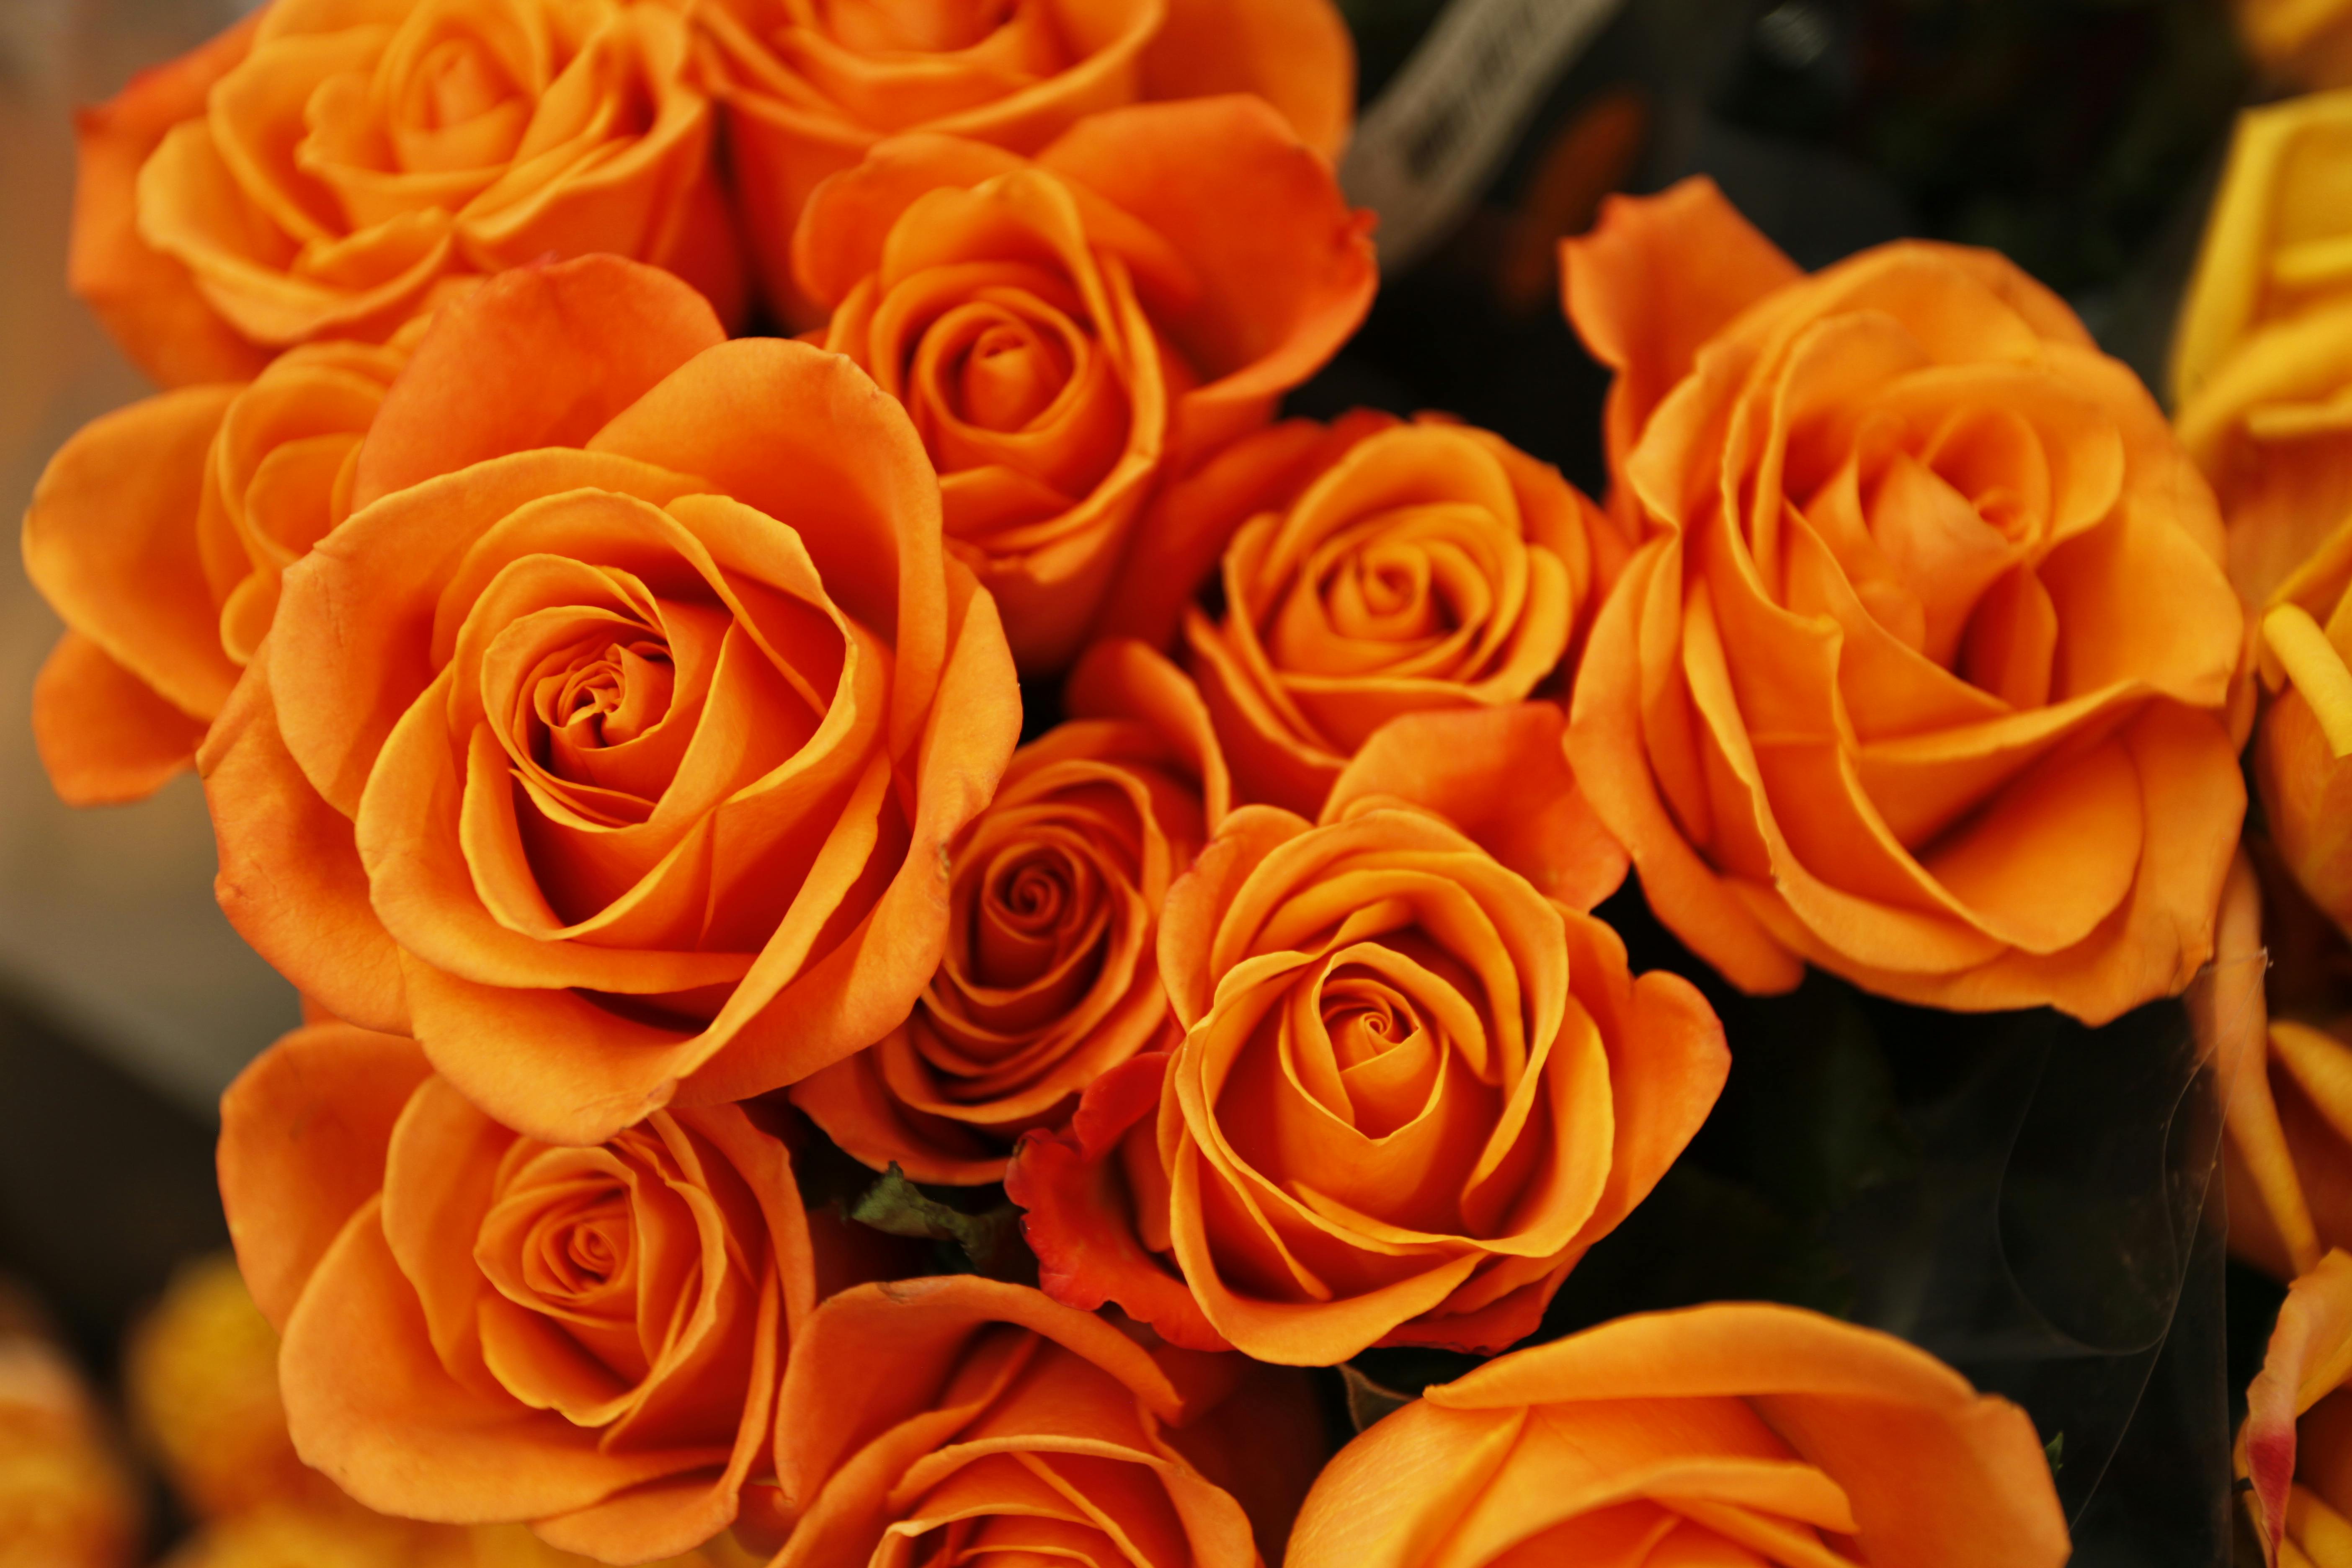 Hình ảnh hoa cam: Tận hưởng vẻ đẹp trọn vẹn của những bông hoa cam đầy quyến rũ và huyền bí. Từ những hình ảnh tuyệt đẹp về sắc độc đáo của hoa đến những bức ảnh ghi lại vẻ đẹp thiên nhiên đầy màu sắc, bạn sẽ không thể rời mắt khỏi chúng.